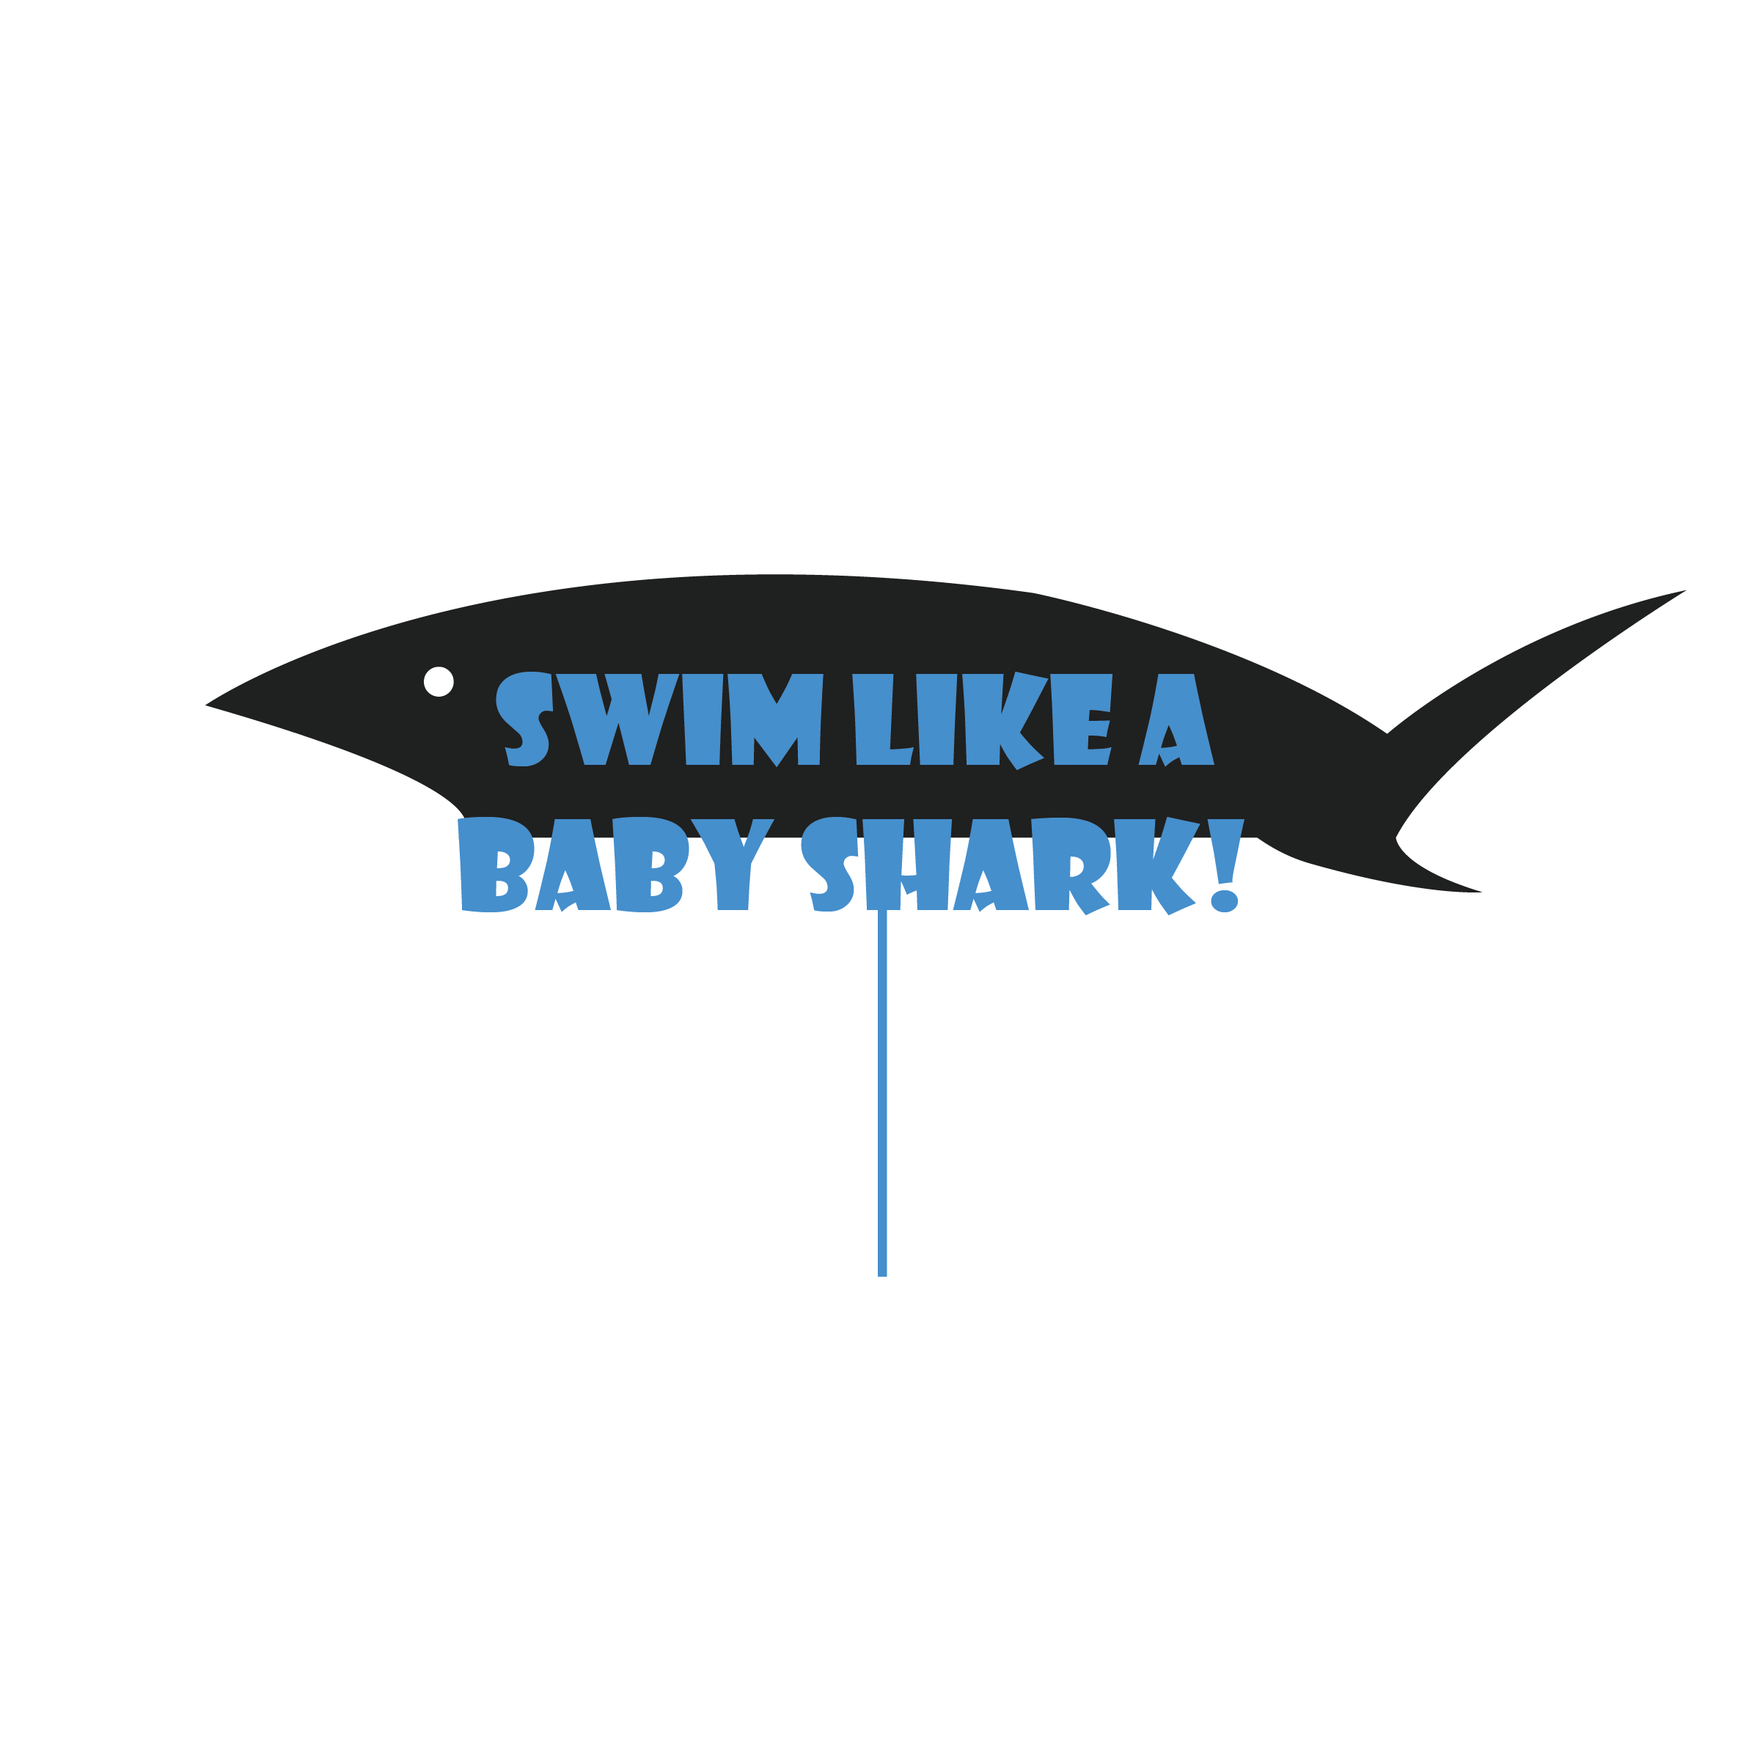 Baby Shark Cake Topper in PDF, Illustrator, EPS, SVG, JPG, PNG